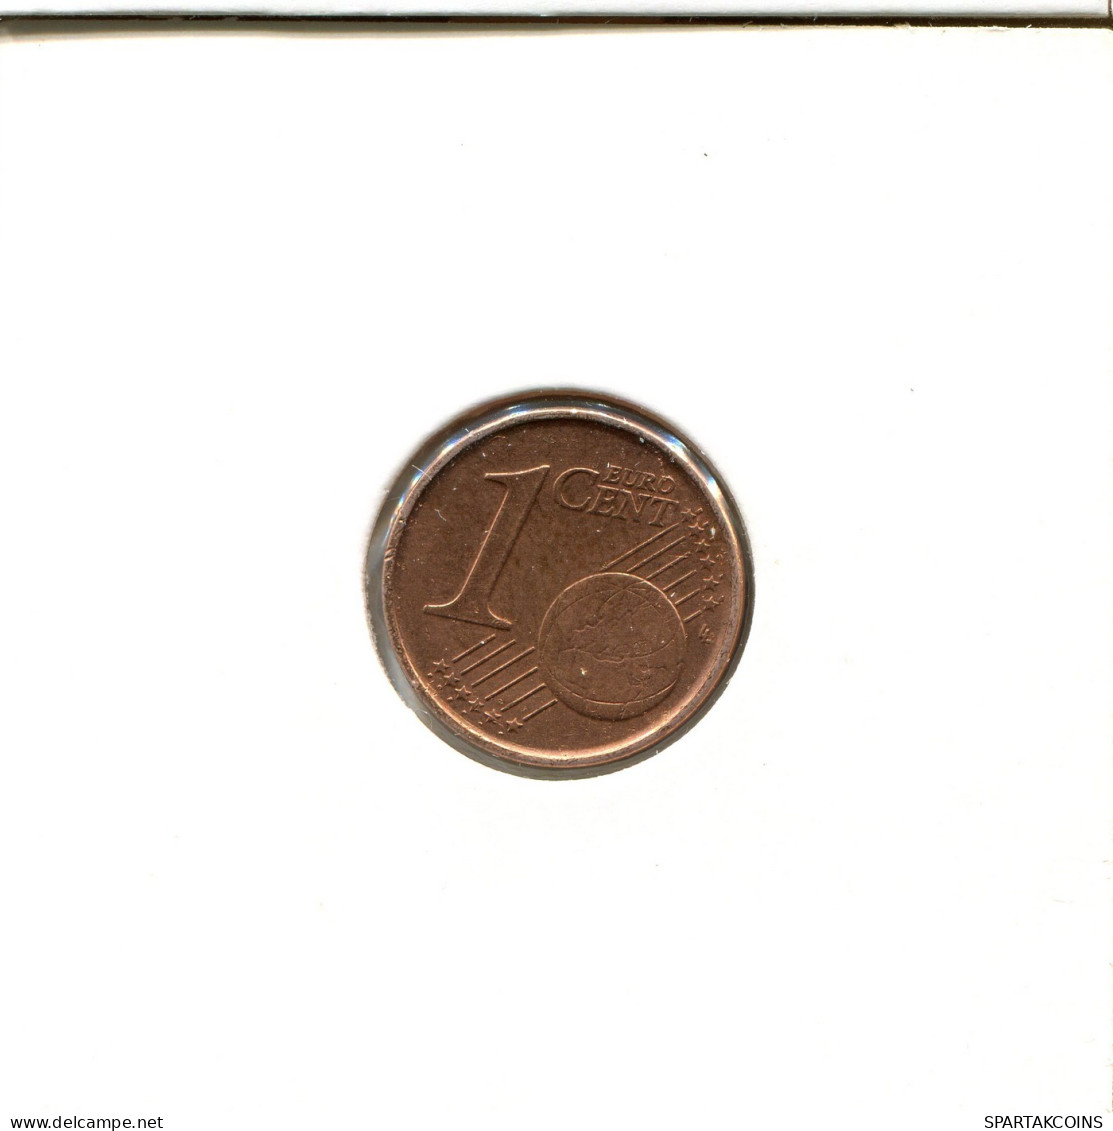 1 EURO CENT 1999 BELGIQUE BELGIUM Pièce #EU035.F.A - Belgium